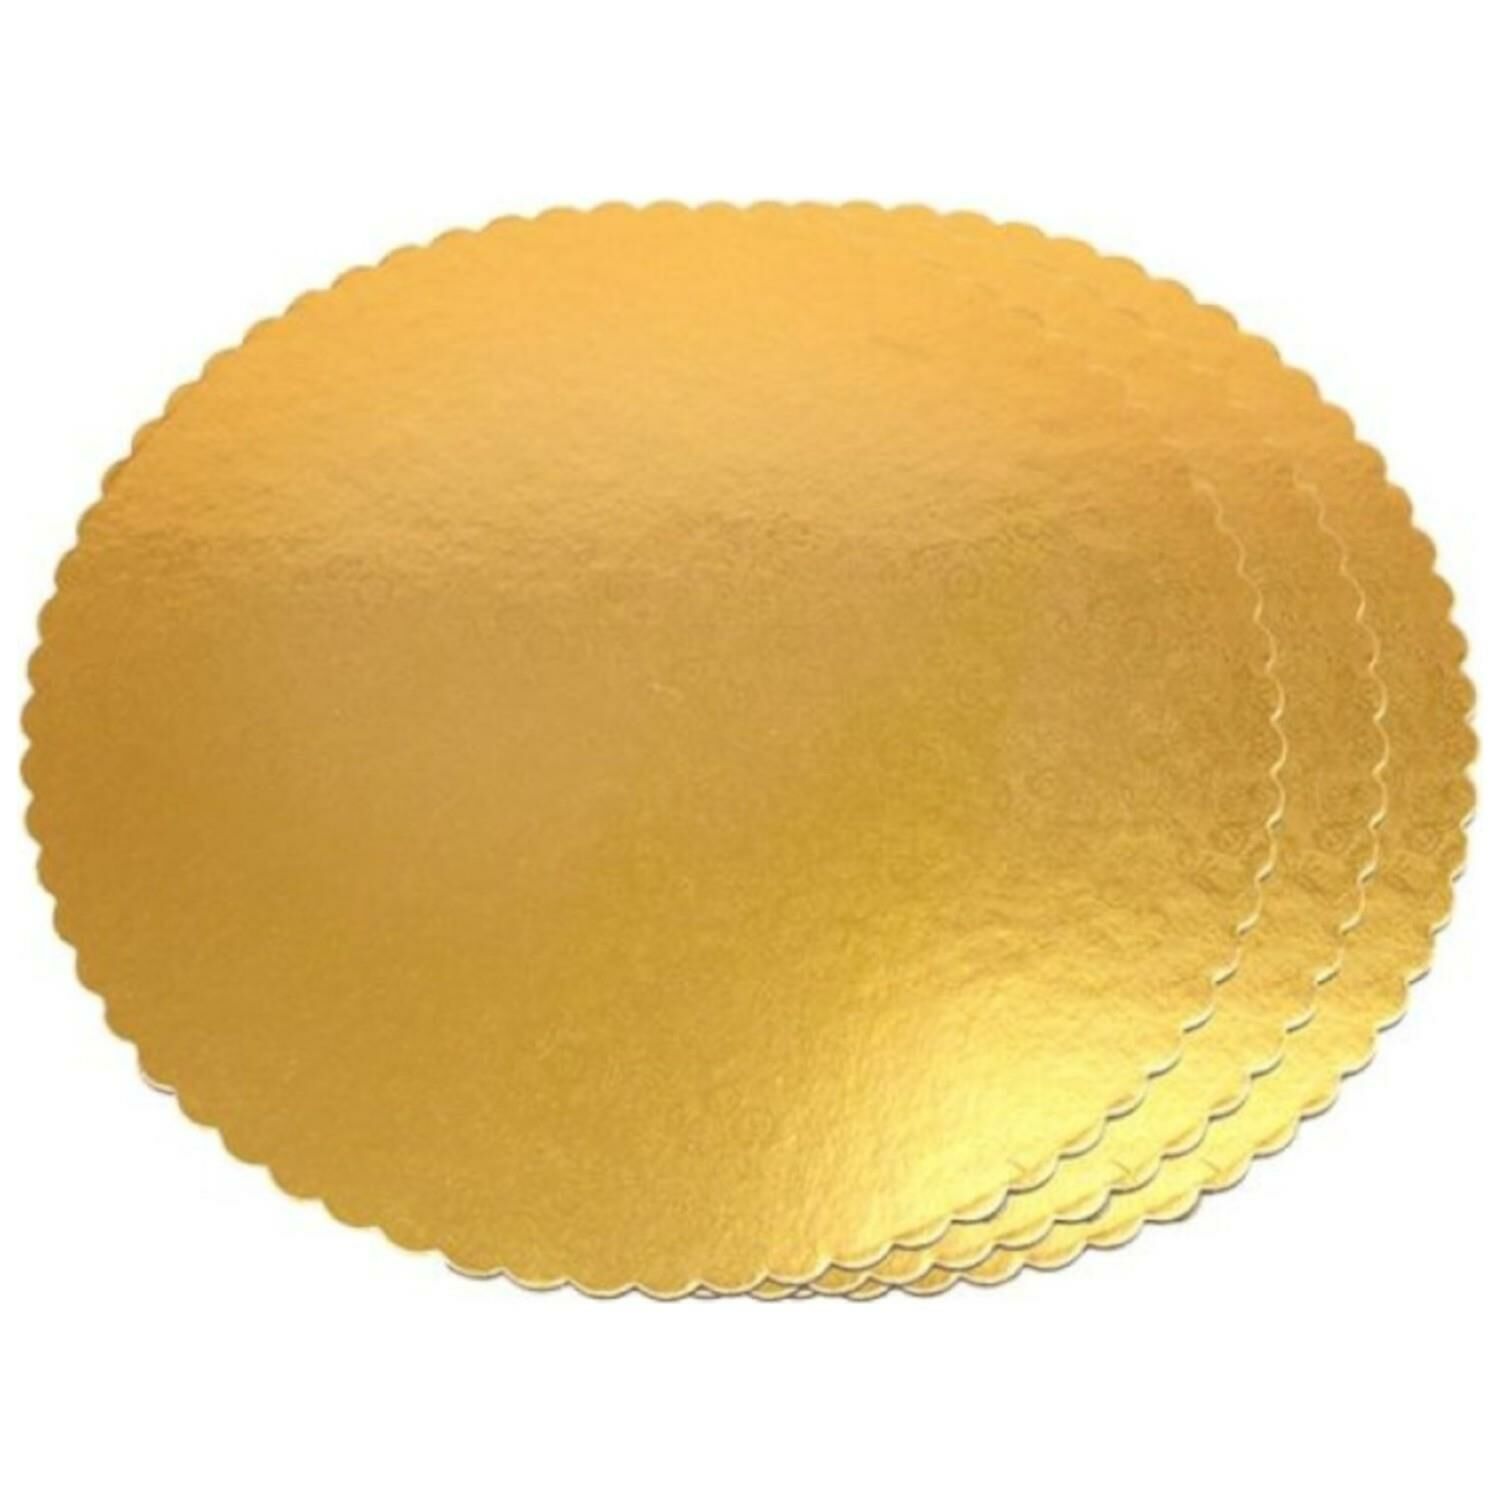 Turta Mendili / Pasta Altlığı Gold -Altın İnce Yuvarlak 26 cm 50 adet